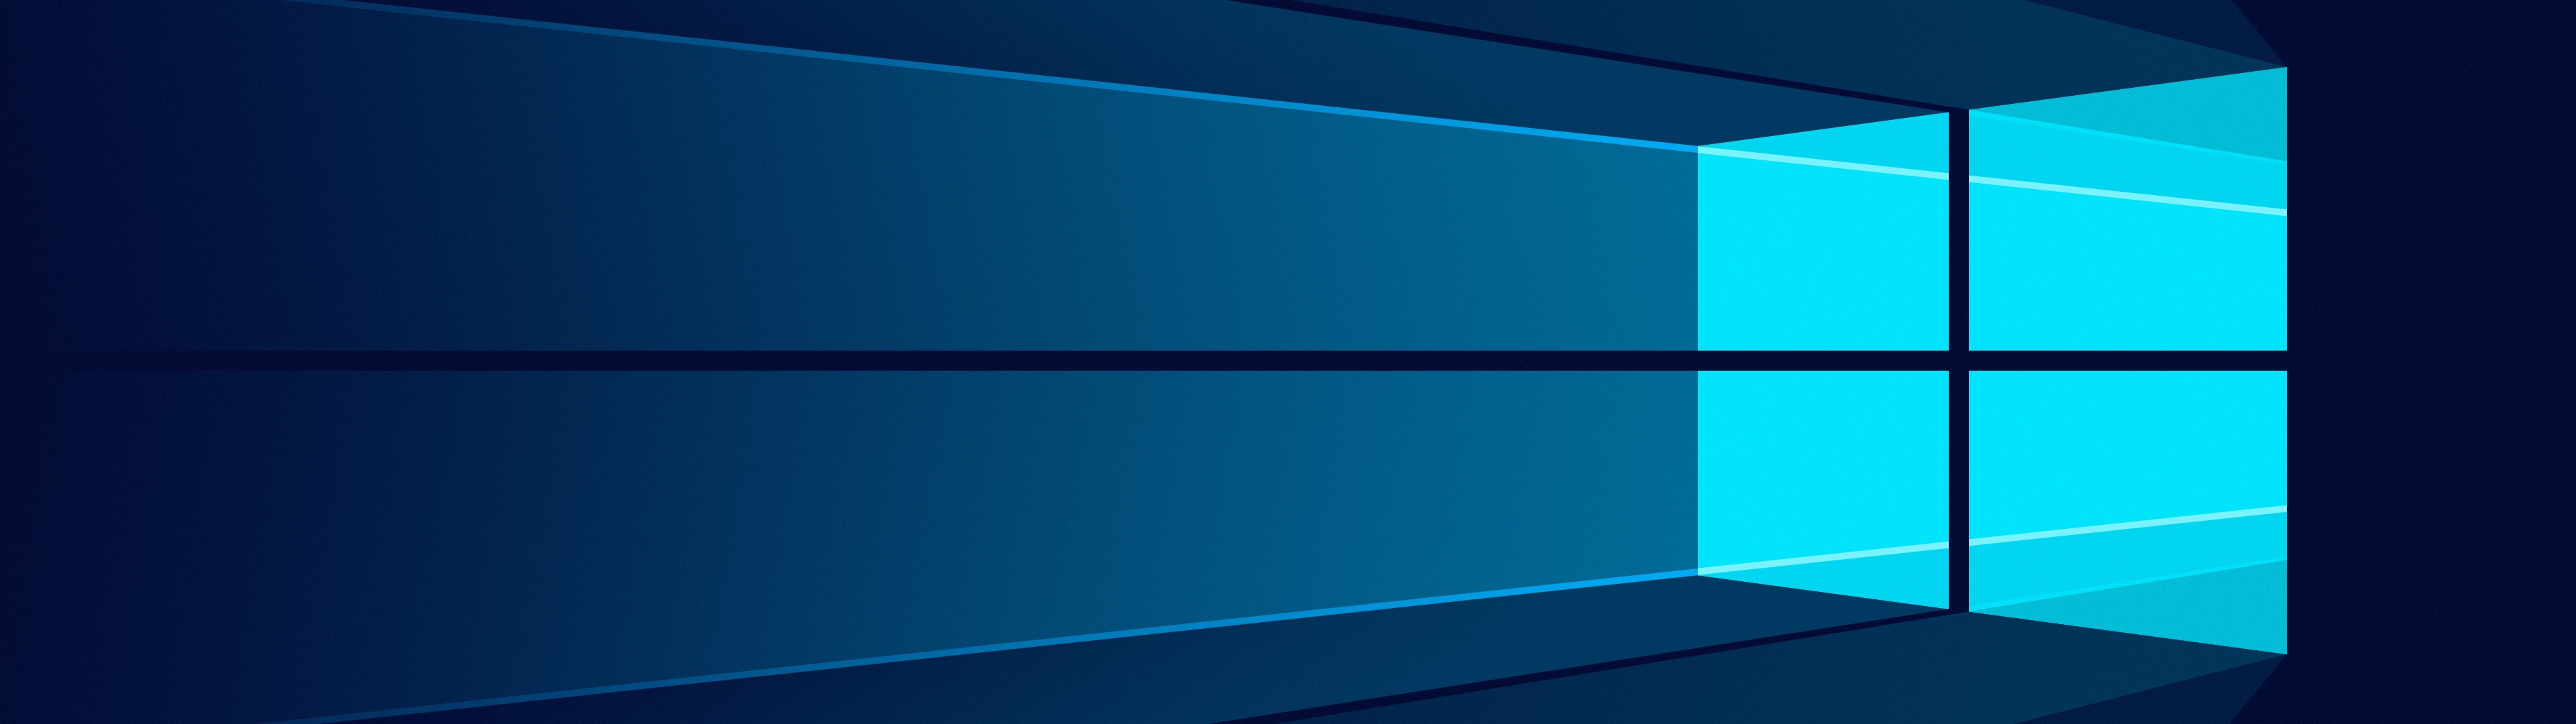 Bộ sưu tập hình nền Windows 10 4K với tông màu xanh lá cây đậm nét và logo Microsoft rực rỡ, sẽ làm đẹp cho màn hình máy tính của bạn một cách đáng kinh ngạc. Chọn hình nền ưa thích và cập nhật ngay cho máy tính của mình để tự tay tạo nên vẻ đẹp tuyệt vời cho màn hình nhé!